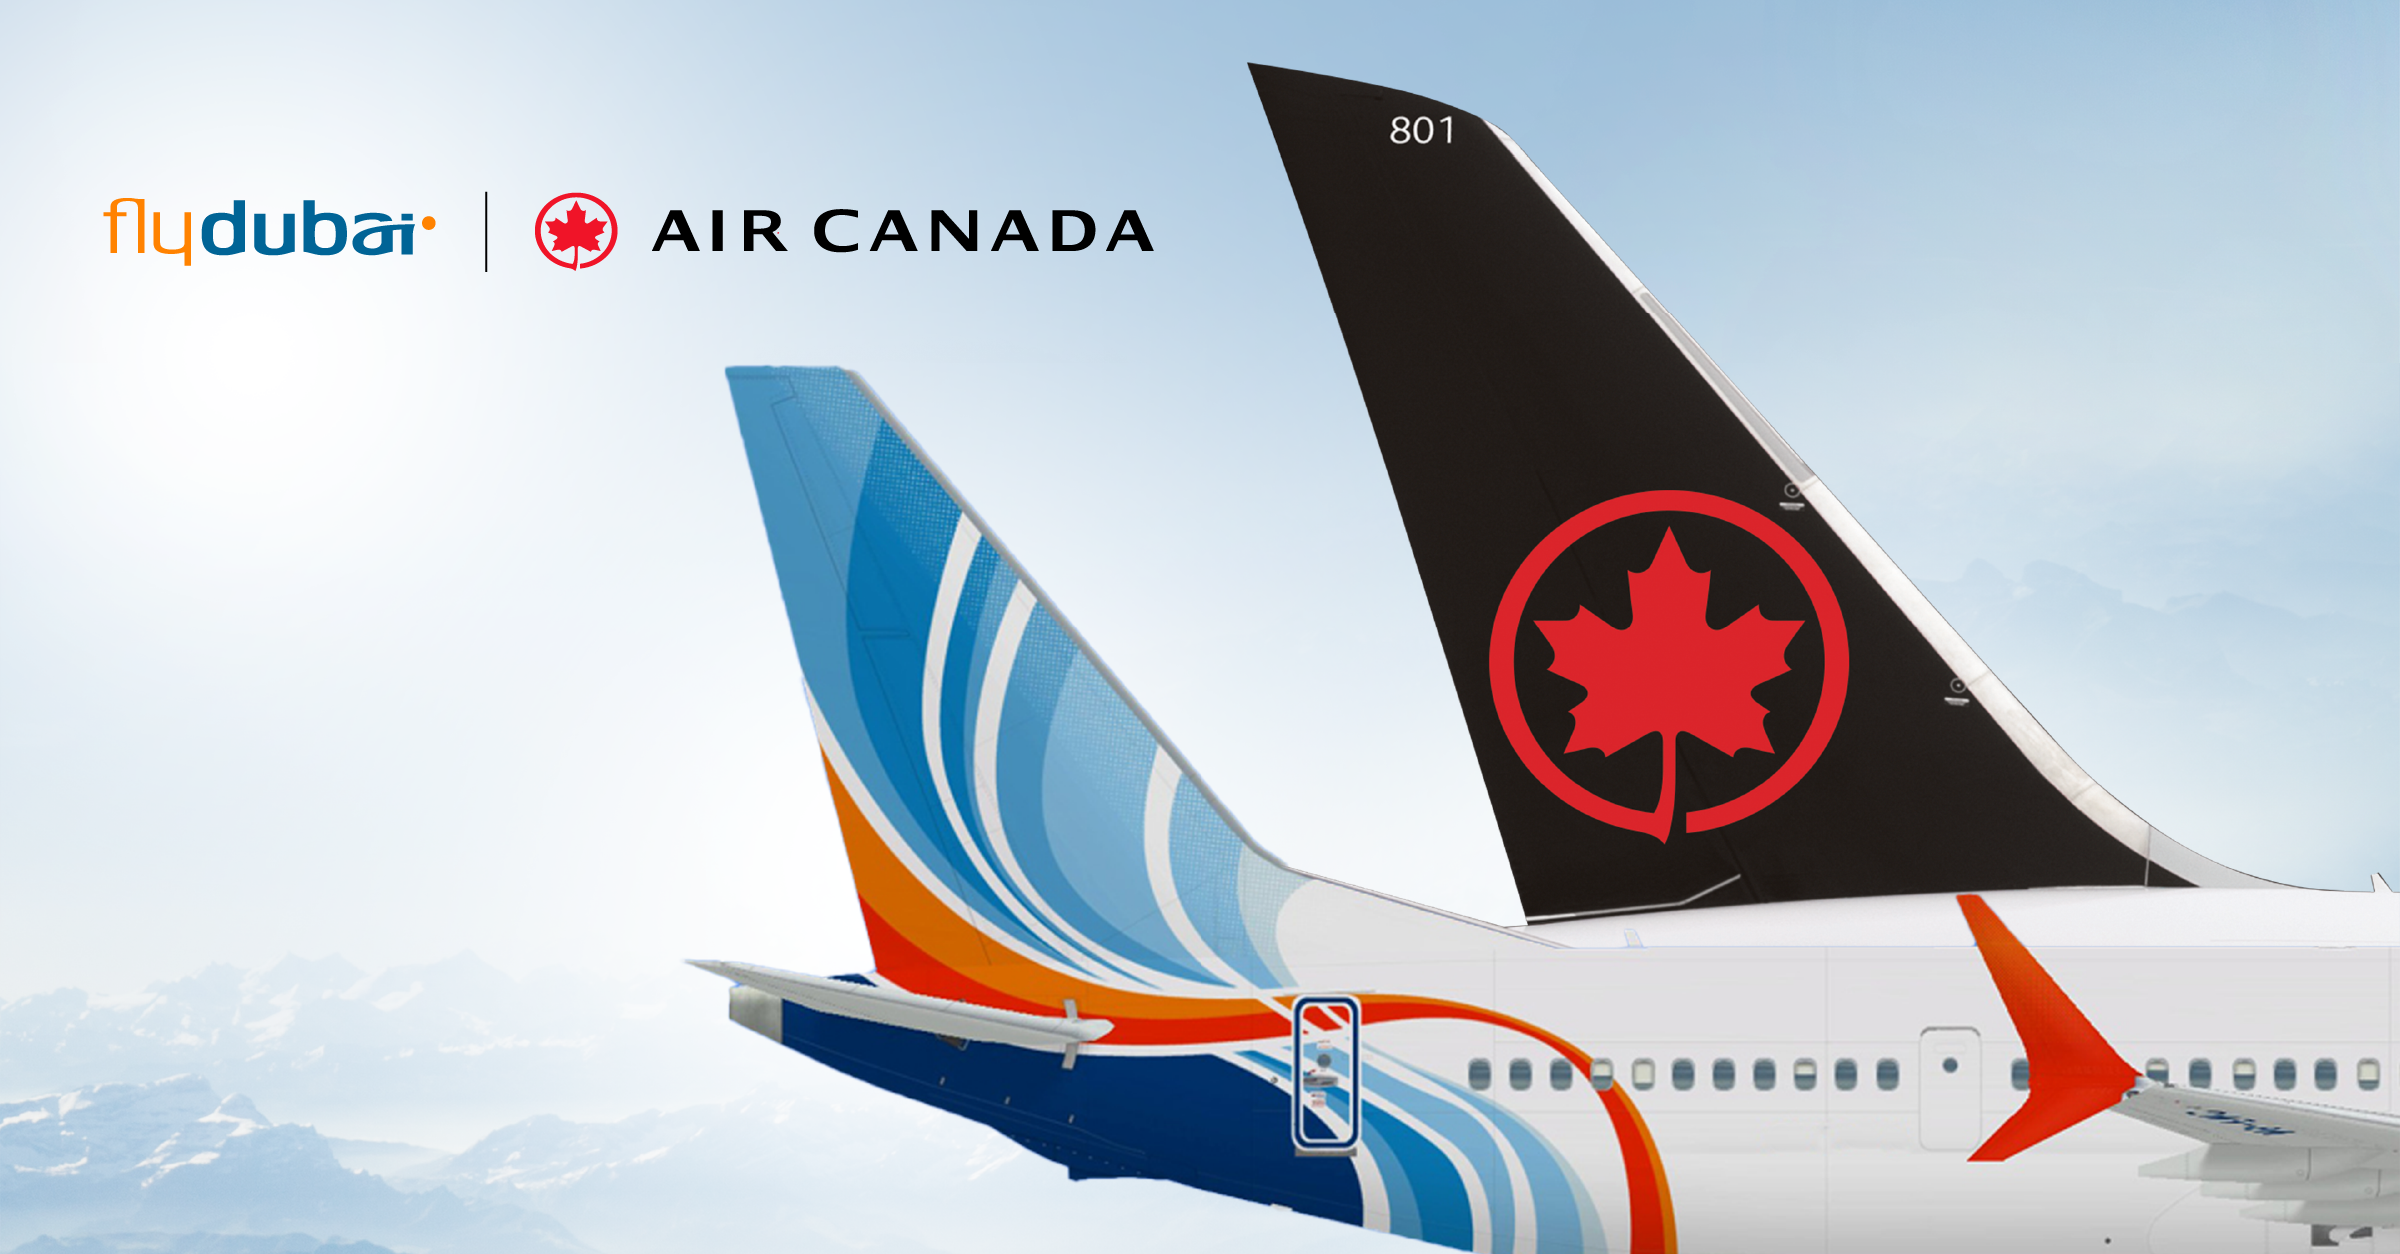 flydubai and Air Canada announce a codeshare partnership